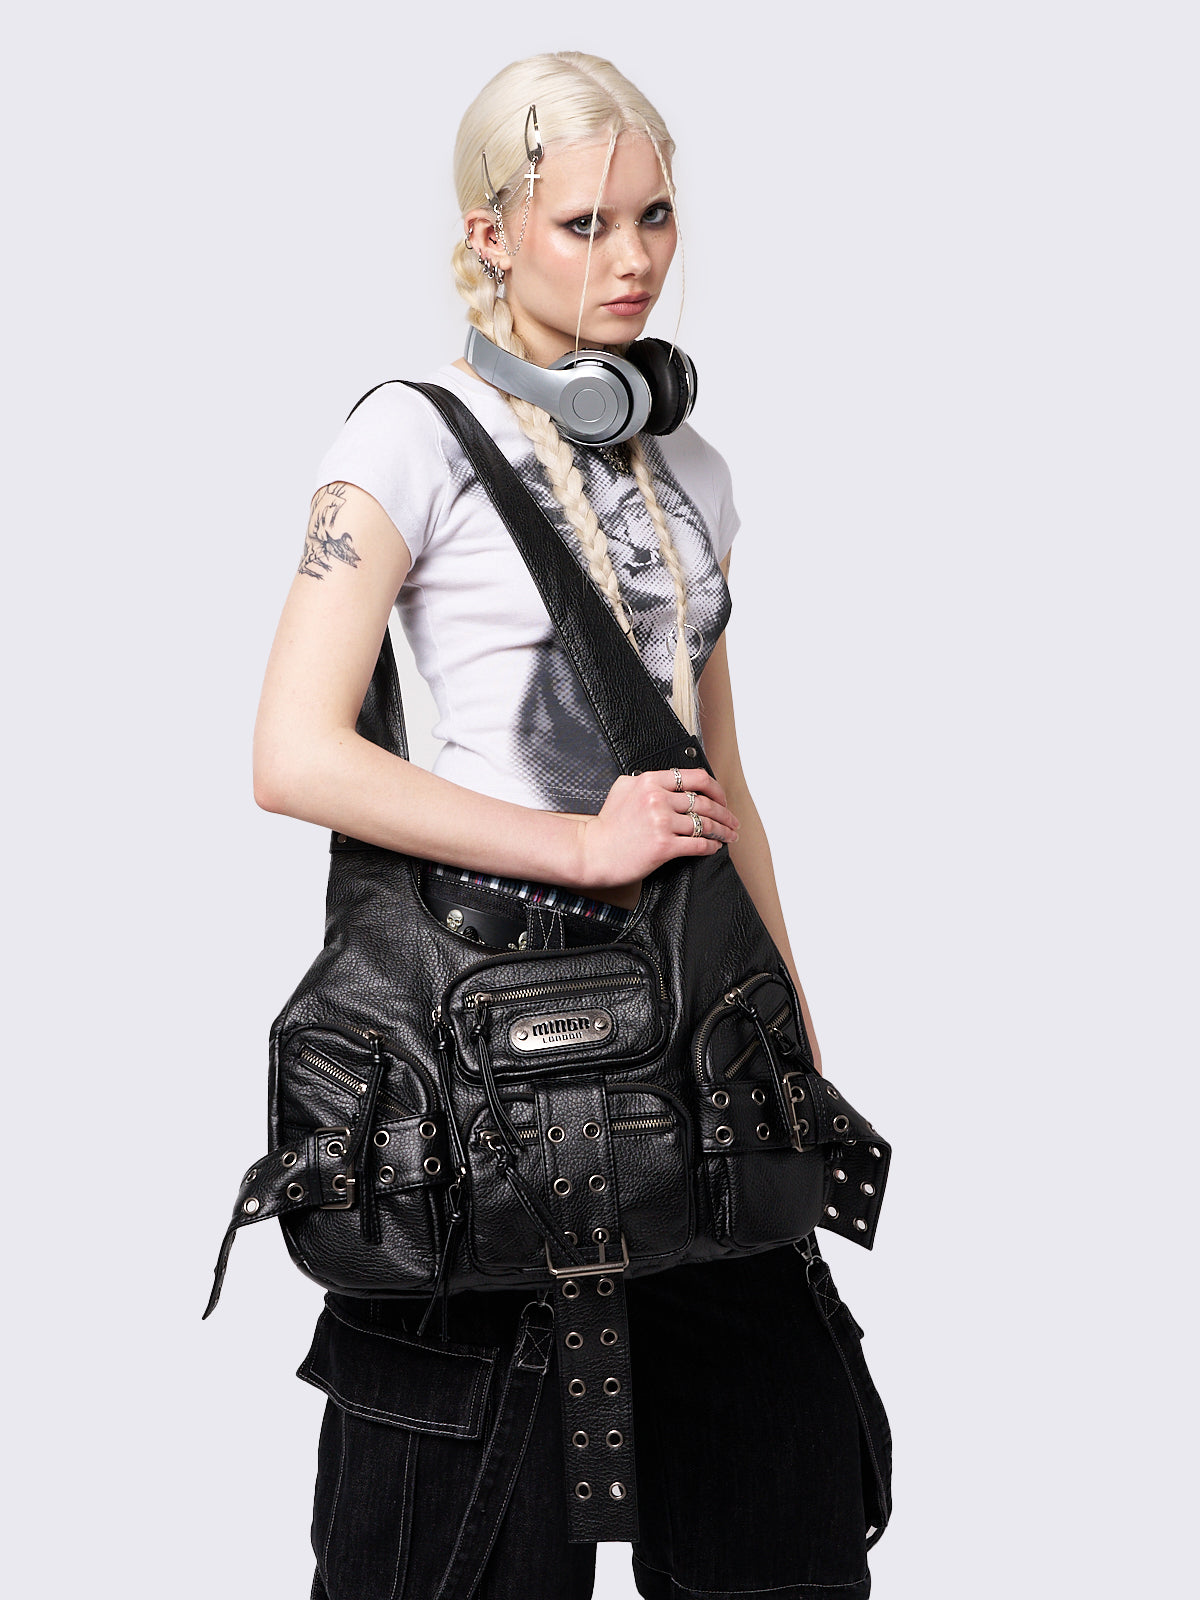 Black Vegan Leather Shoulder Bag with Multi Pockets and Buckle Straps